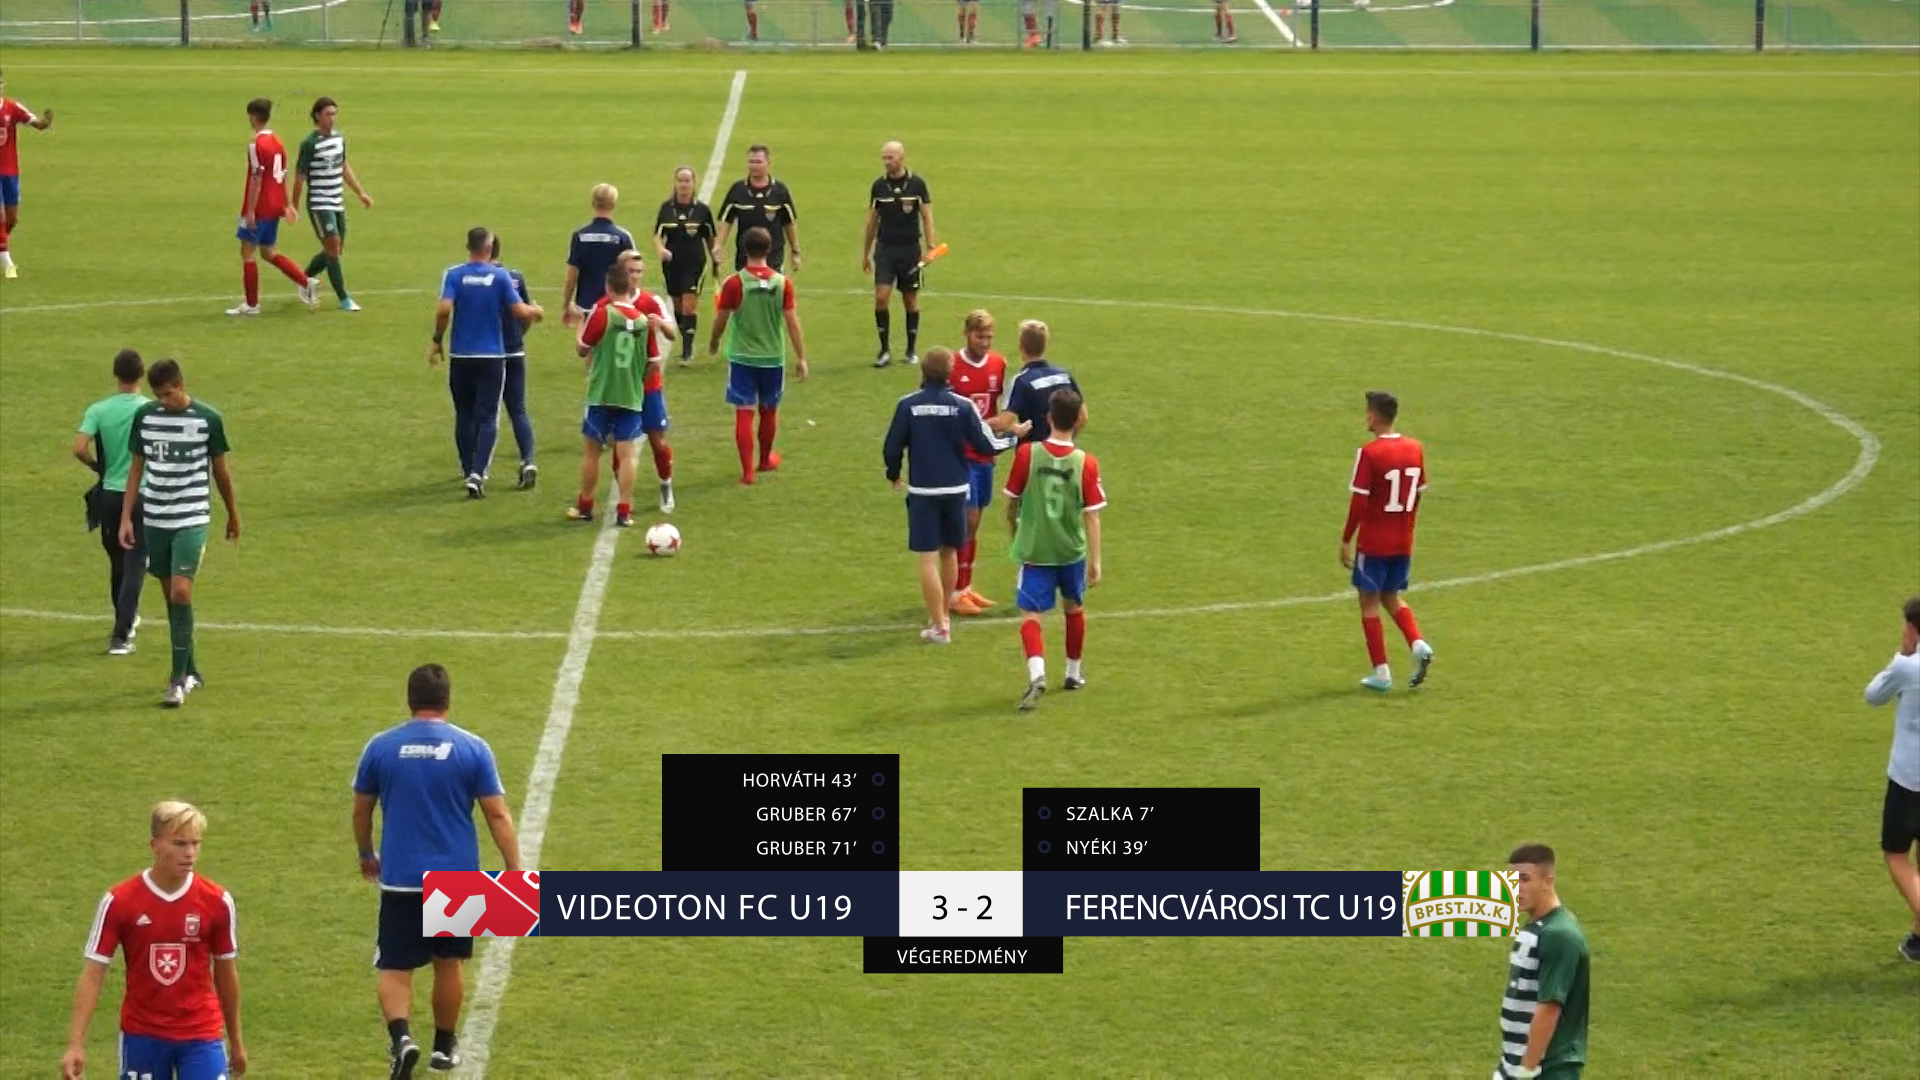 Ferencvarosi Tc U19